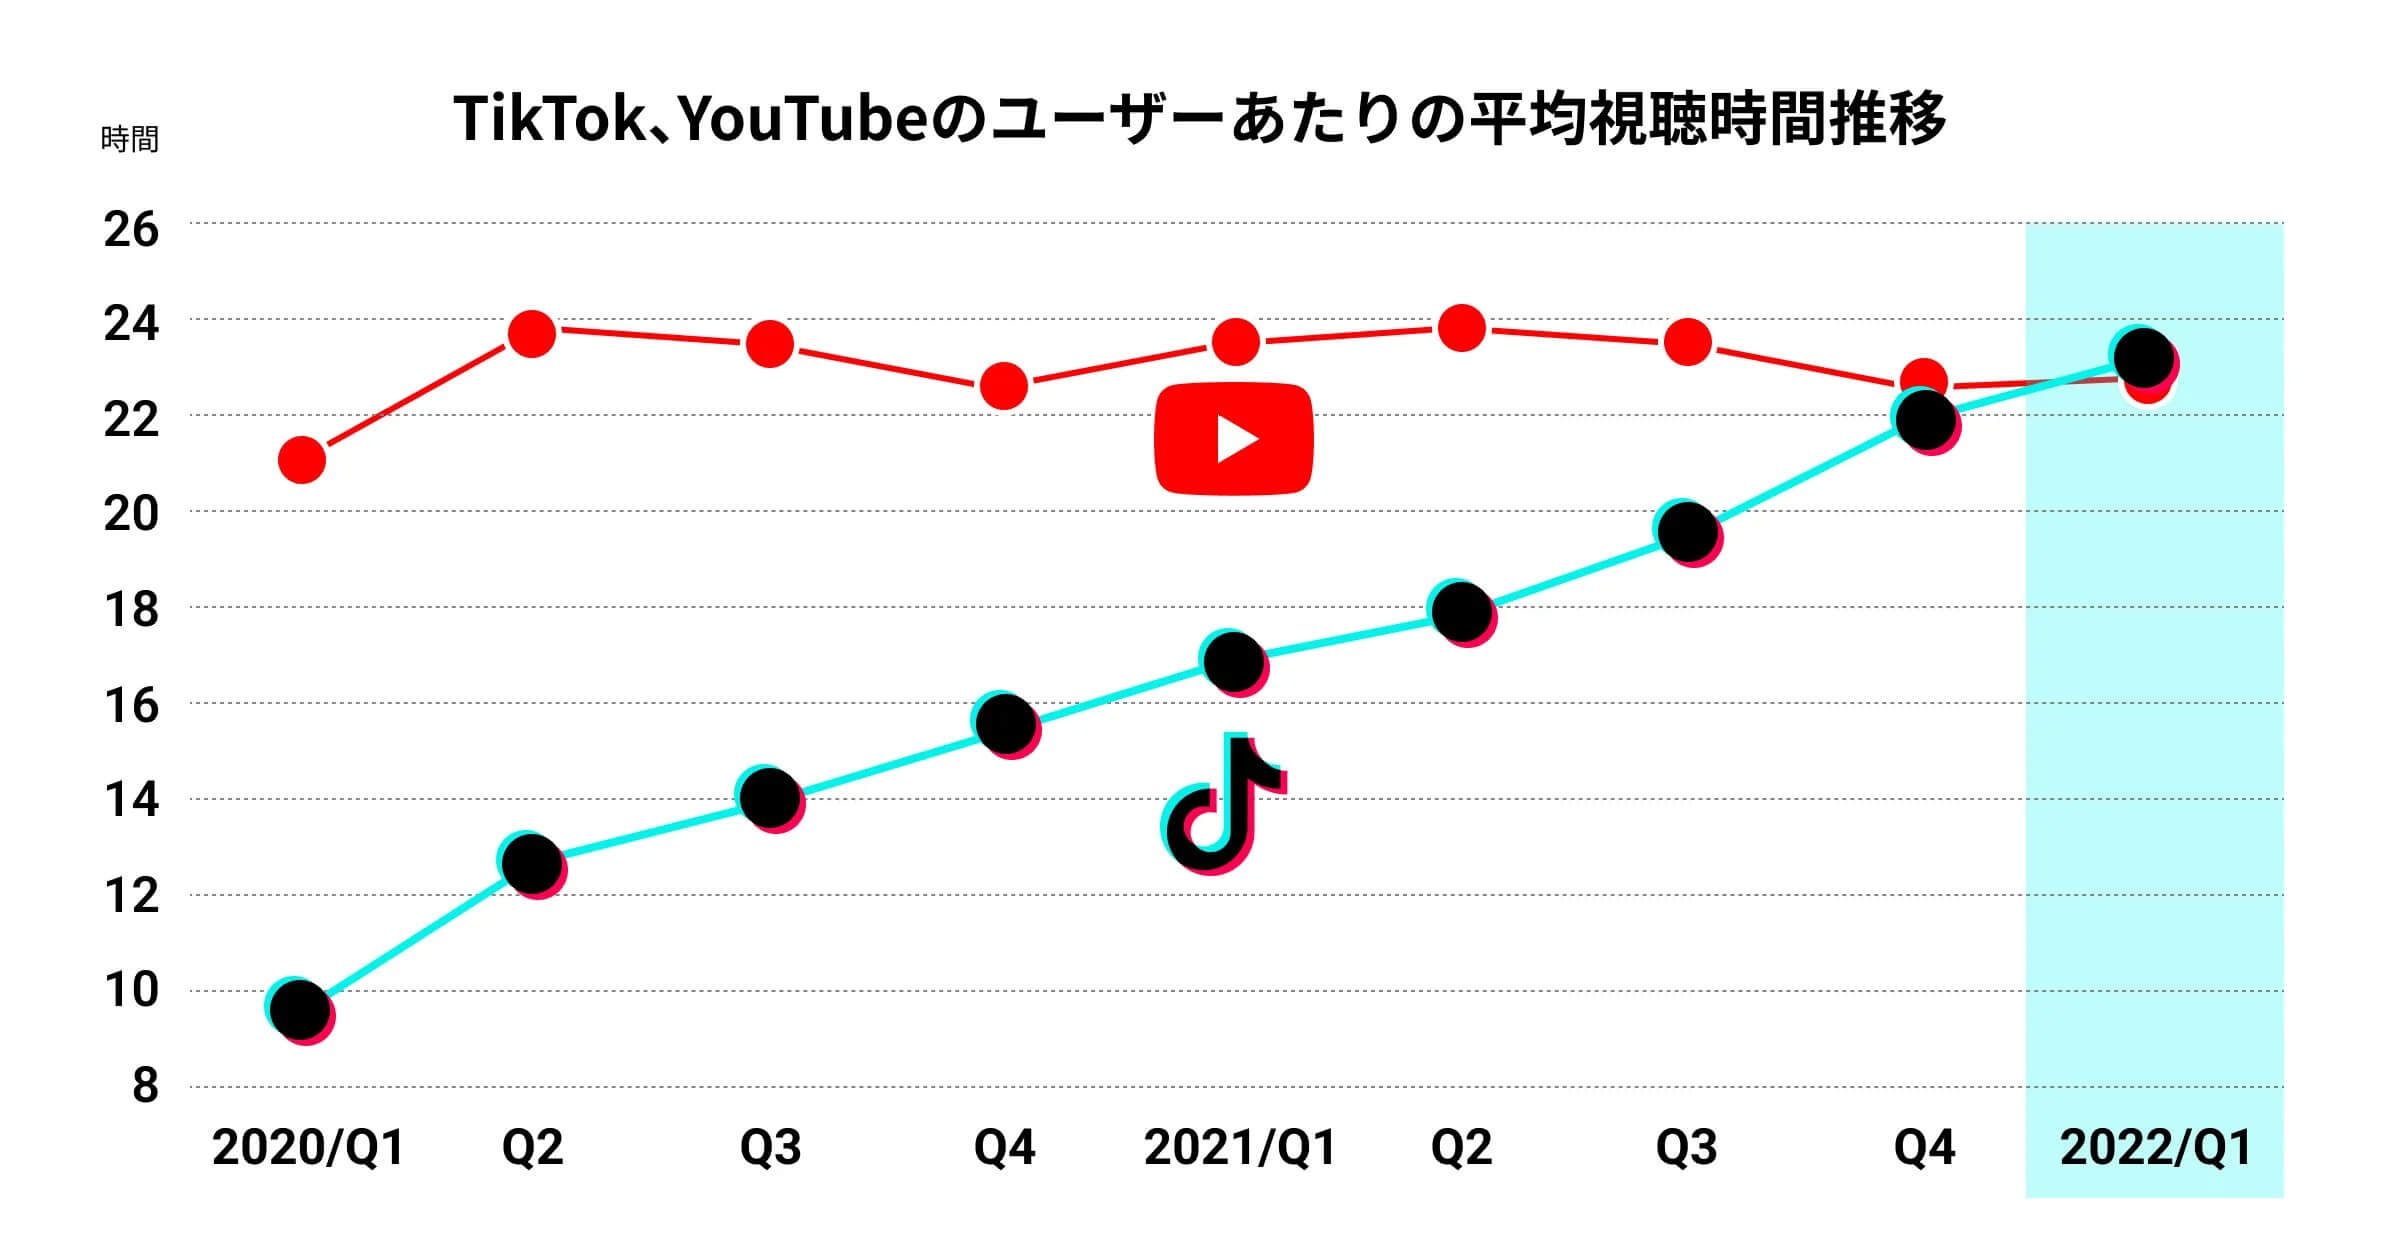 データで見るTikTok・YouTubeショートの現在